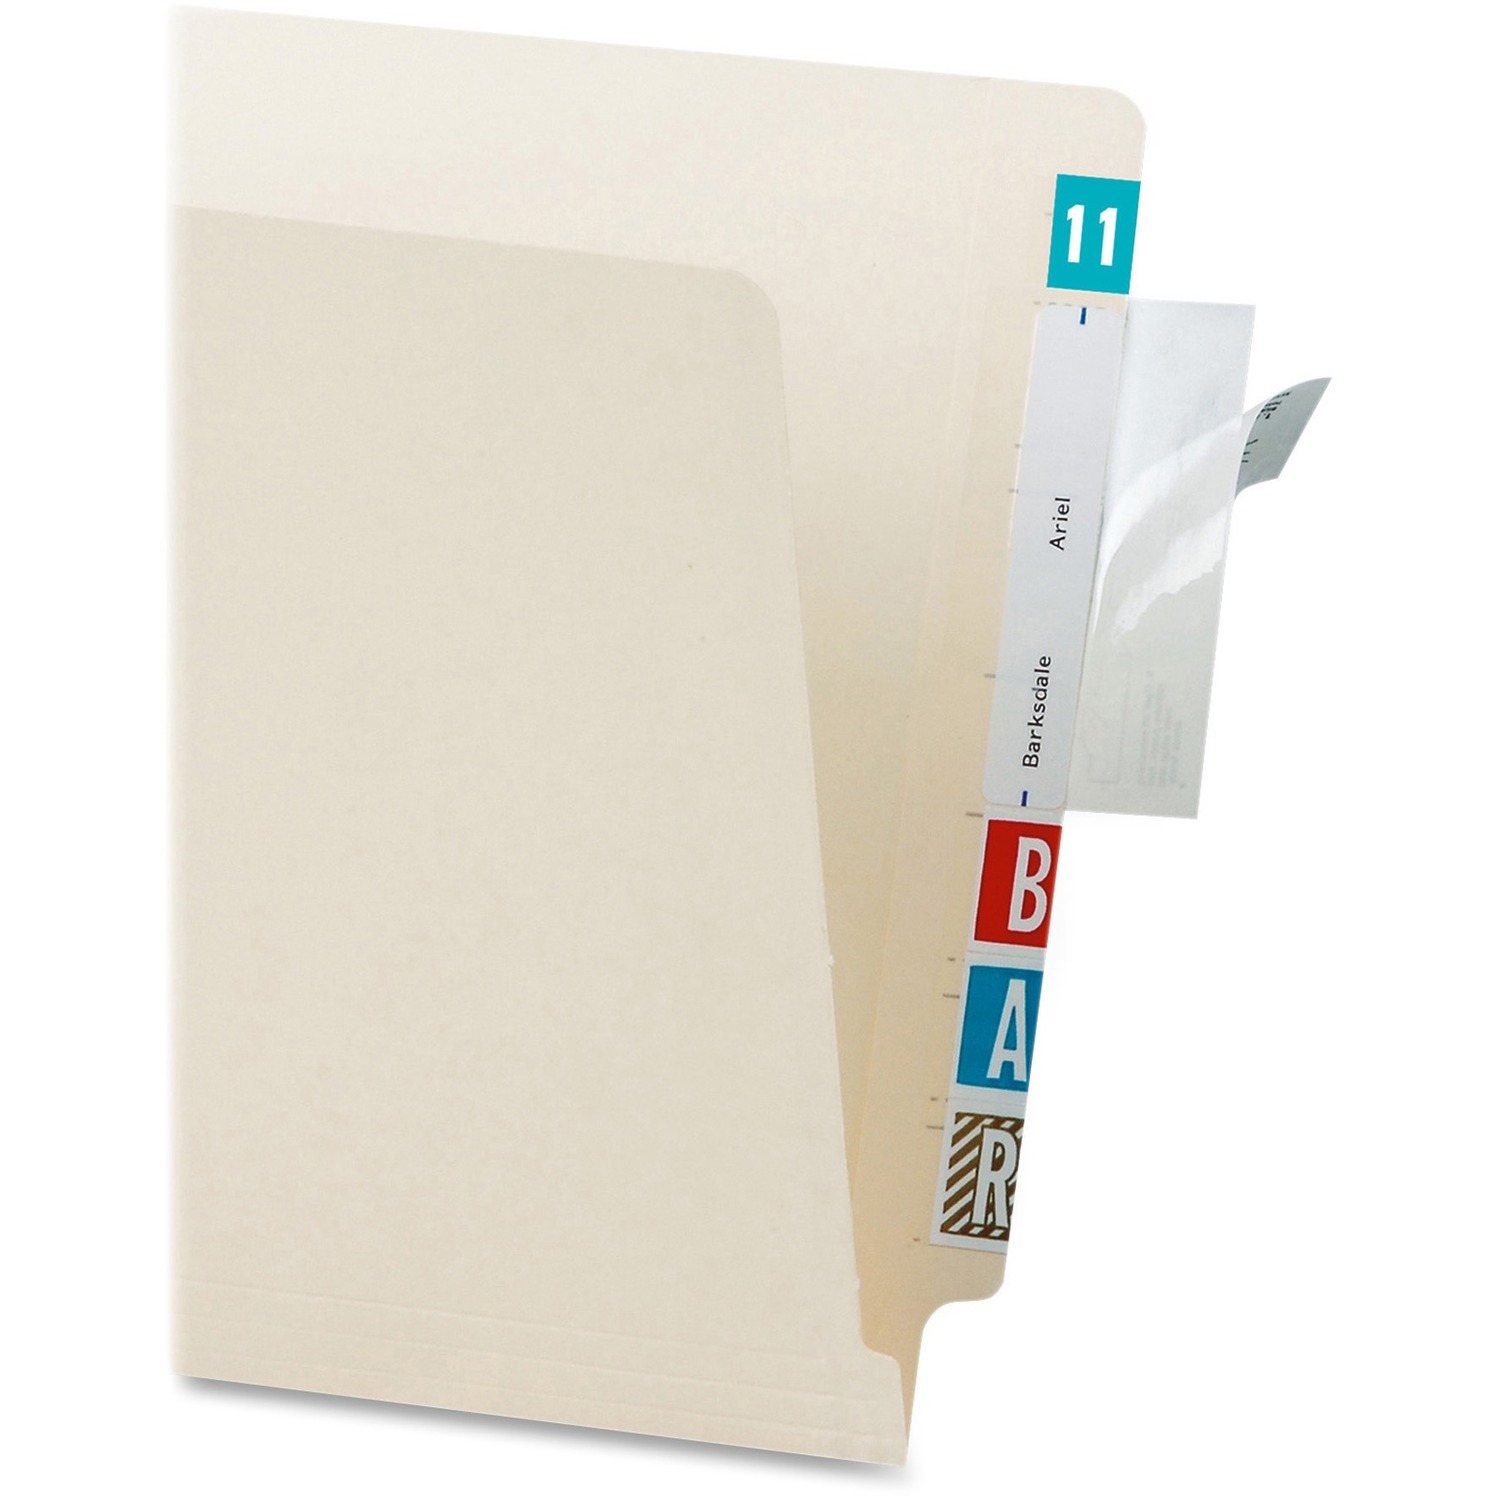 folder protector 5.35 crack